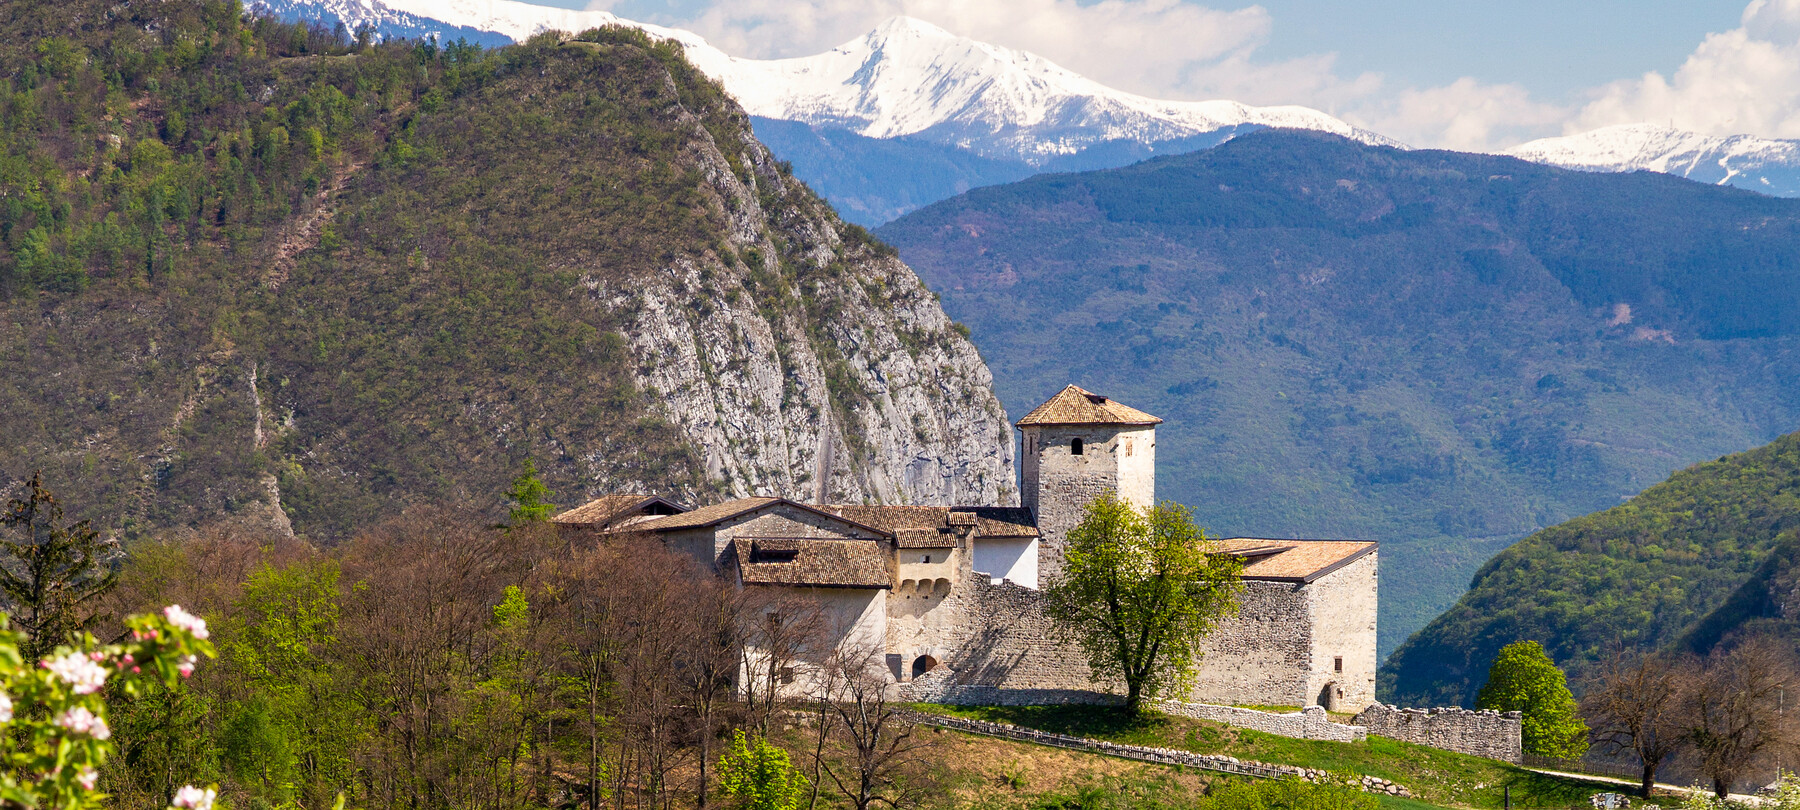 Mostre in Trentino | Trento, Rovereto e alte località